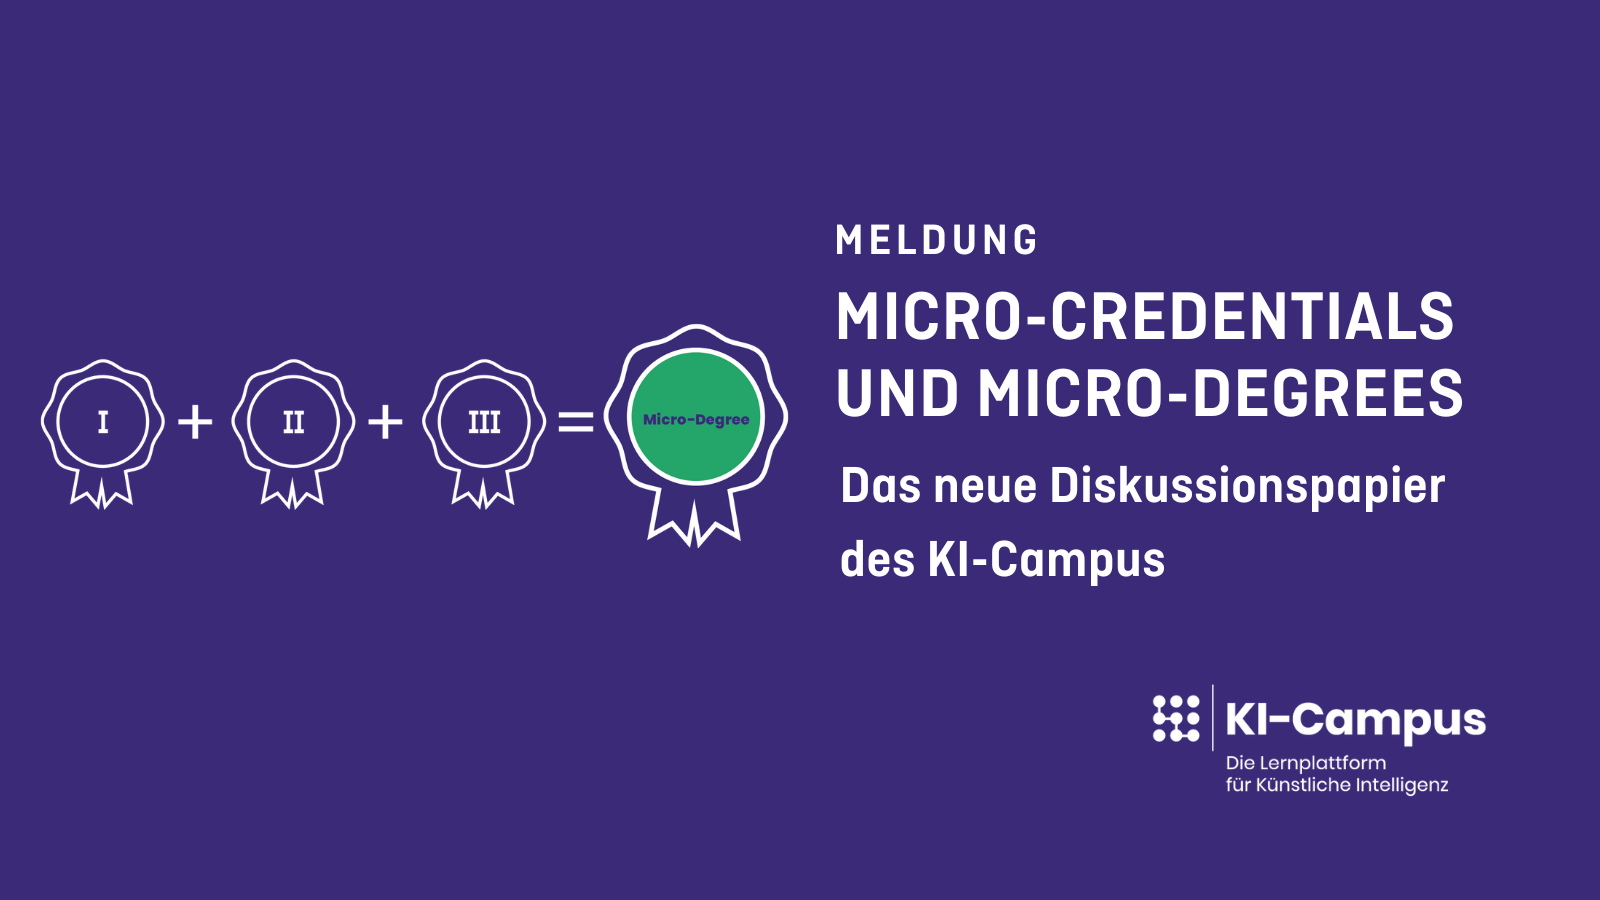 Auf auberginenfarbenden Hintergrund sthe in weißer Schrift: Meldung Micro-Credentials und Micro-Degrees Das neue Diskussionspapier des KI-Campus, In der unteren rechten Ecke befiundet sich das KI-Campus-Logo